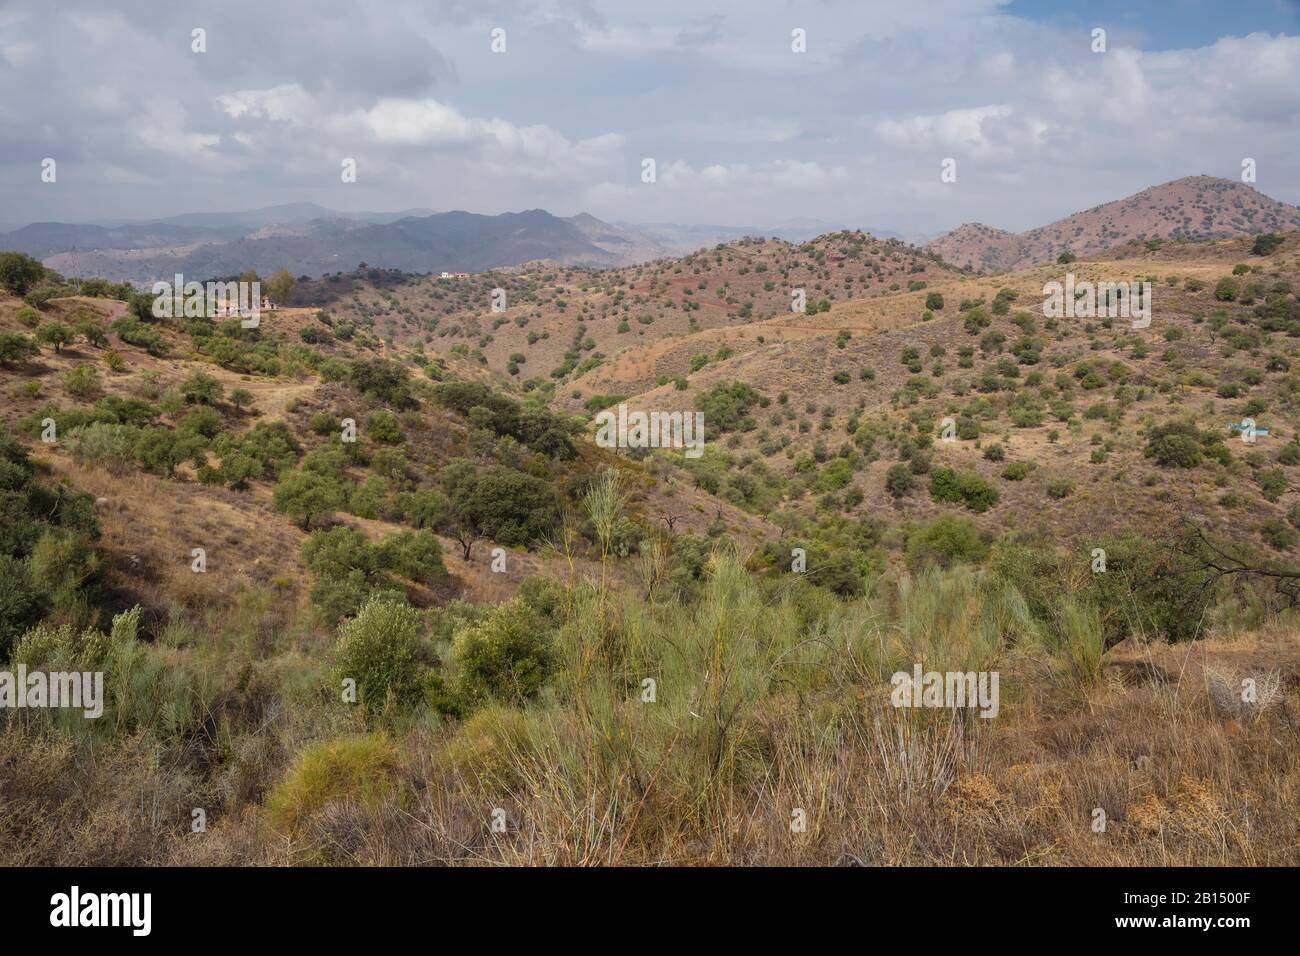 Tipico paesaggio mediterraneo nella provincia di Malaga, vicino ad Almogia. Foto Stock